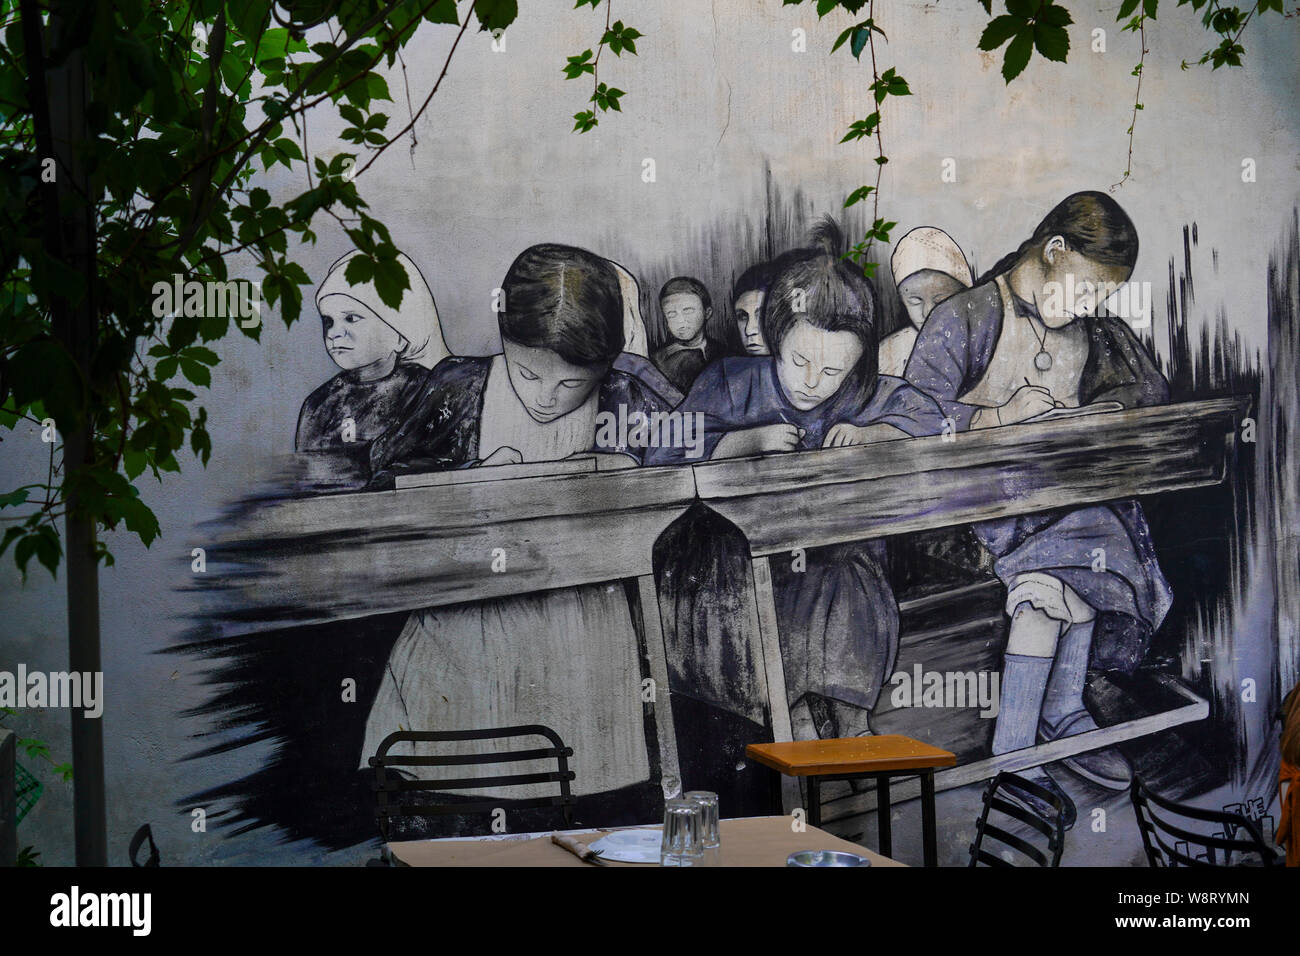 Athènes, Grèce, le Graffiti de l'école des filles dans une salle de classe d'époque sur un mur Banque D'Images